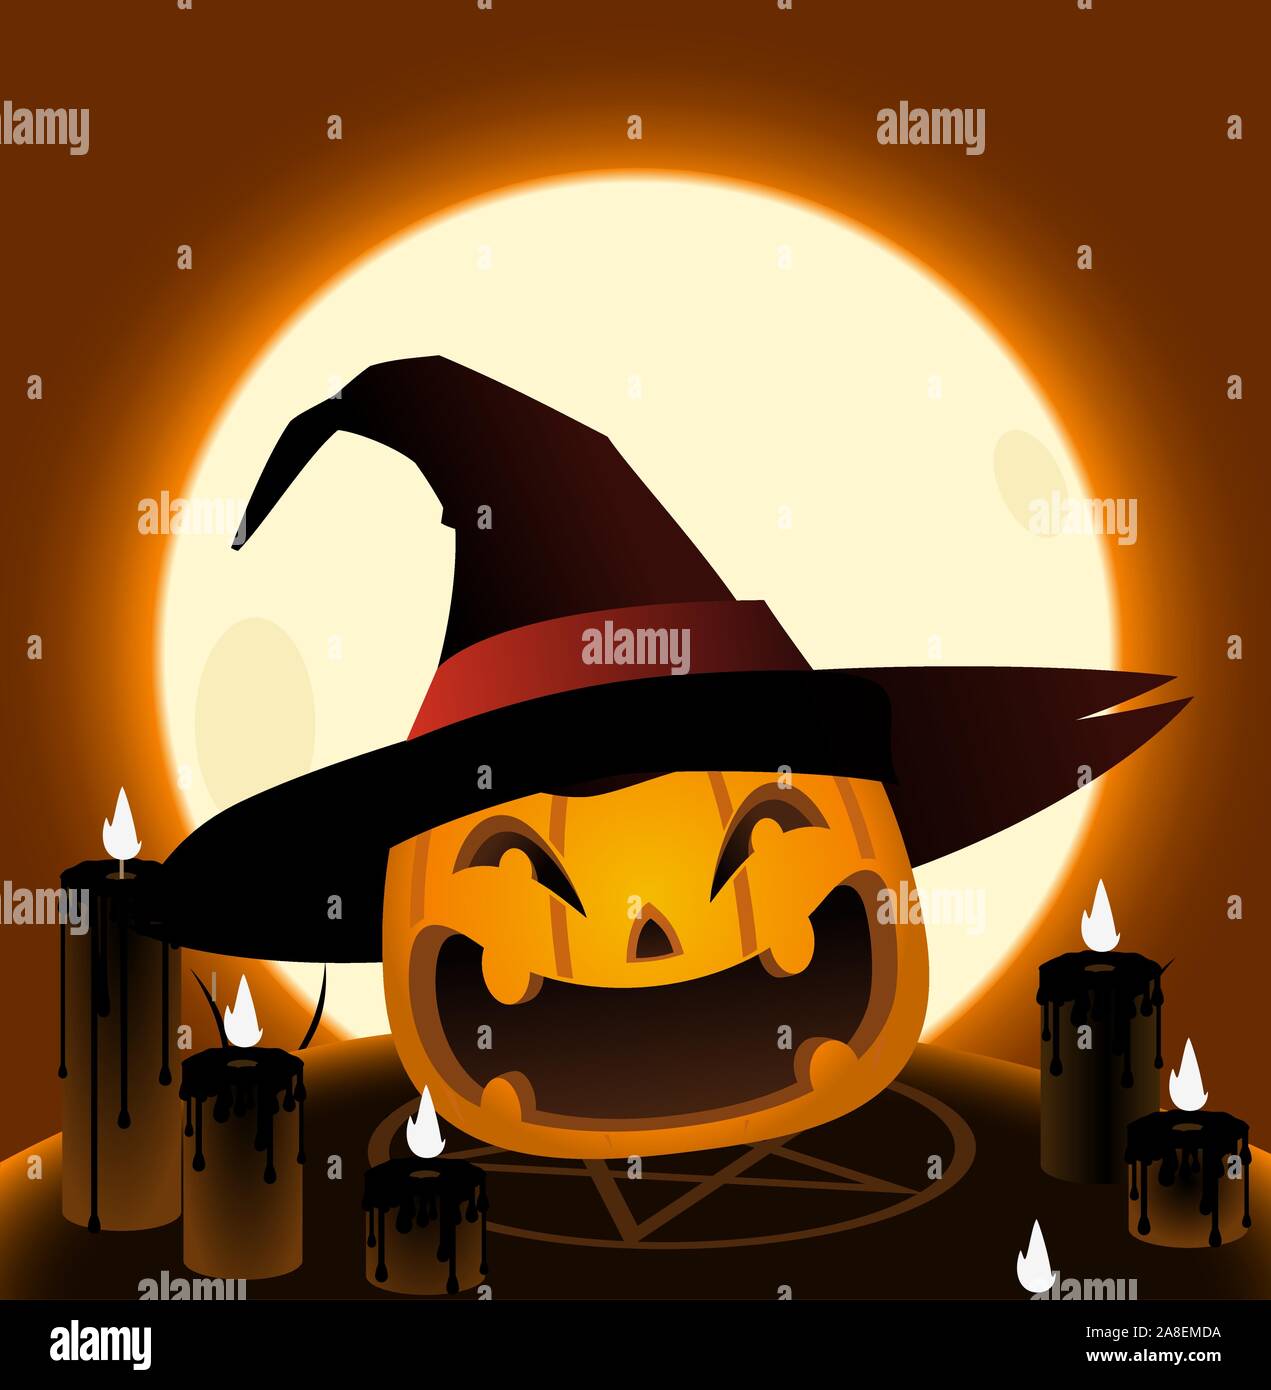 Zucca di Halloween testa rituale magico cartoon illustrazione Illustrazione Vettoriale